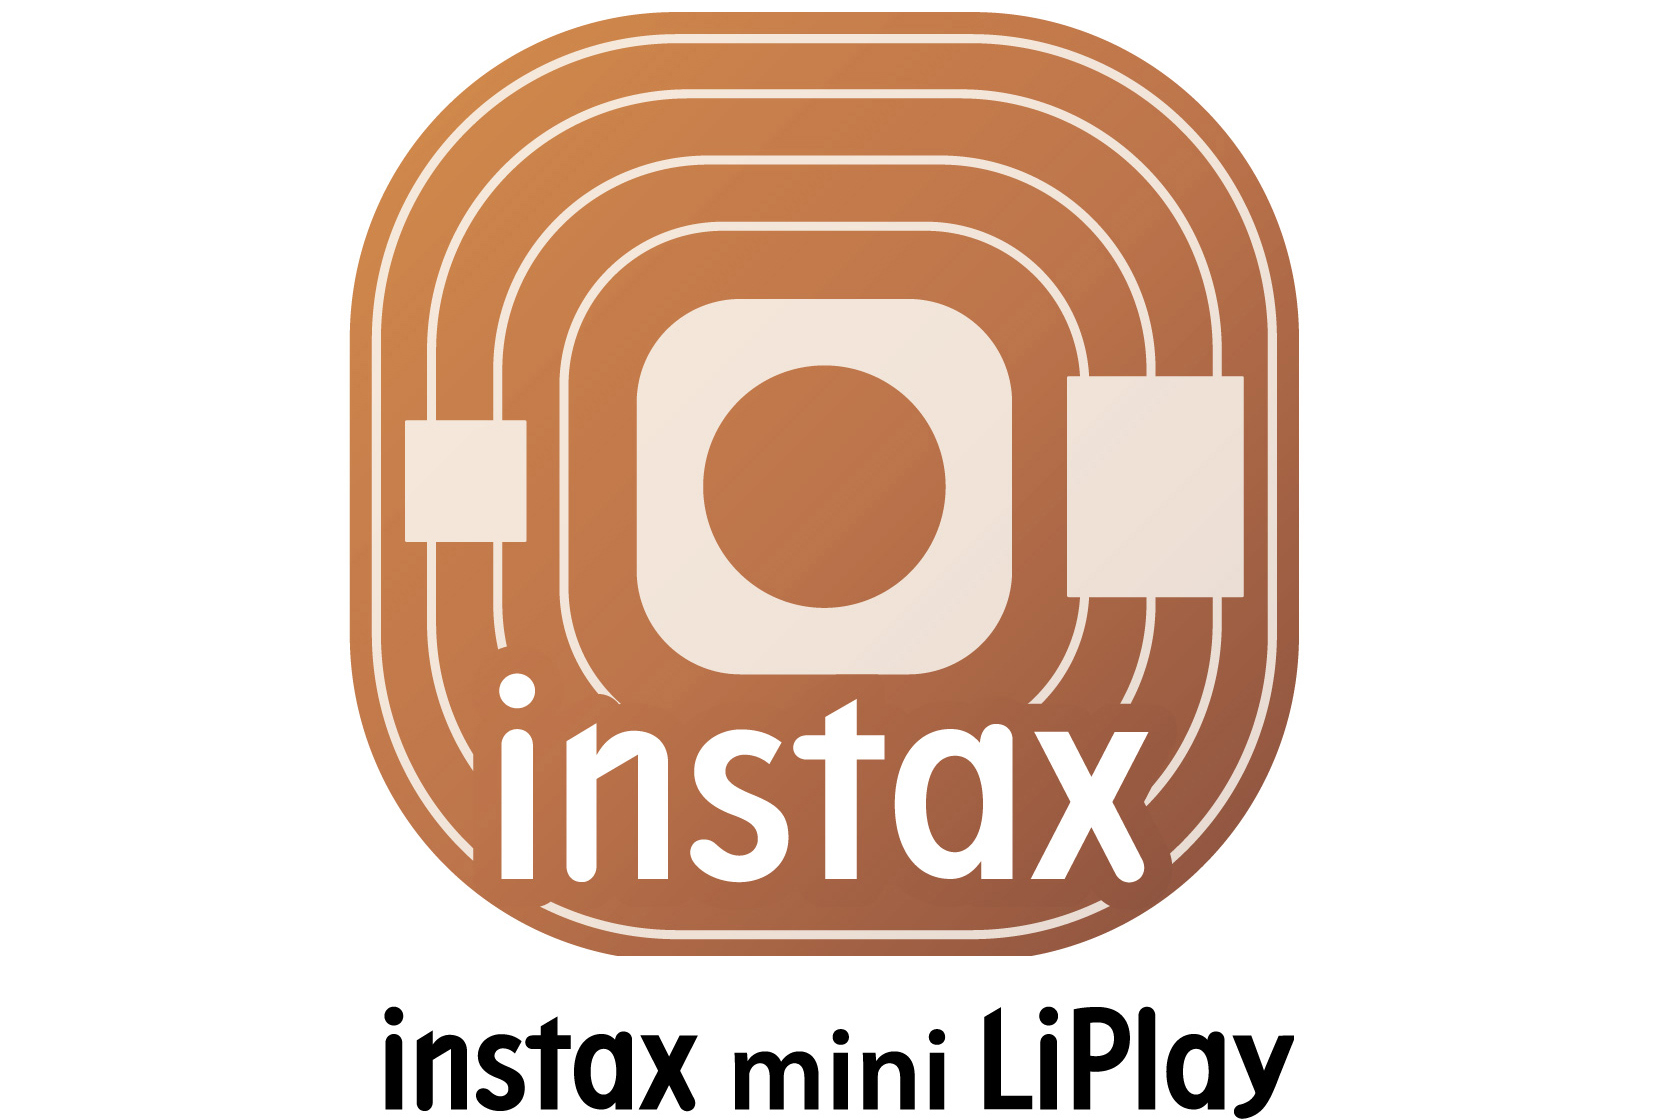 "instax mini LiPlay应用程序，instax mini LiPlay下载 instax mini LiPlay APP下载"